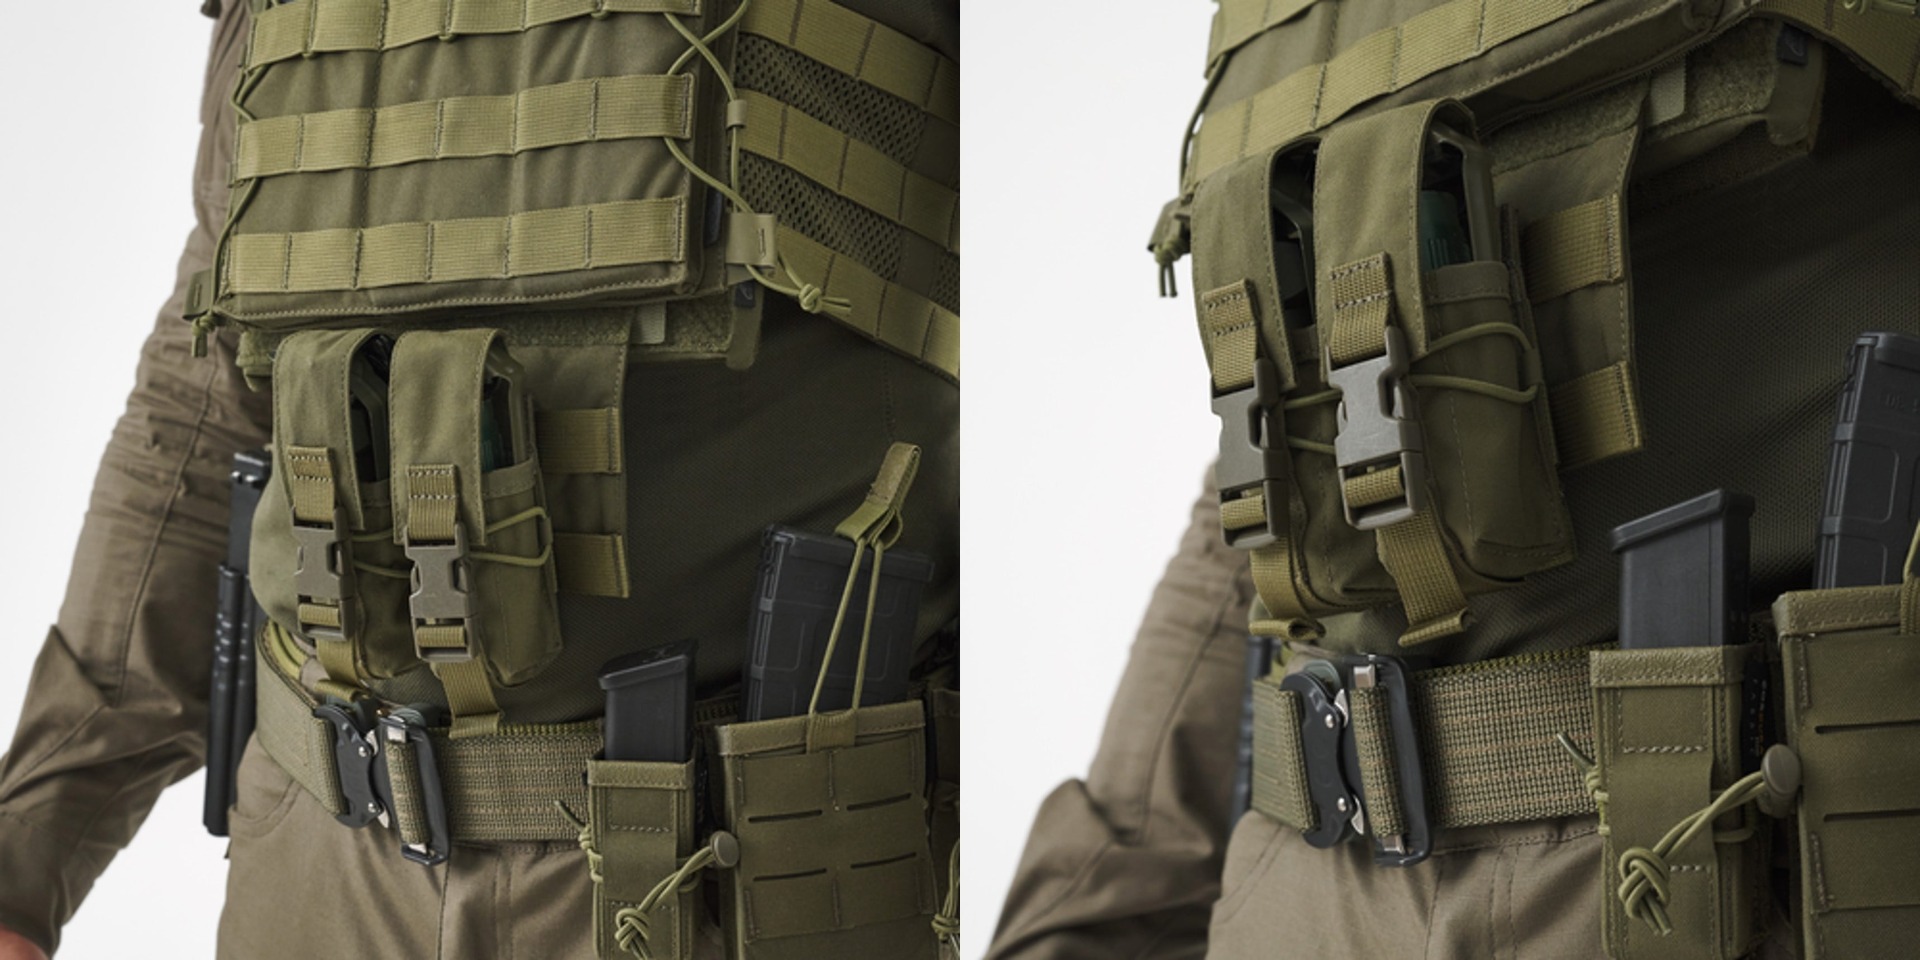 Helikon Guardian Dangler torbica v multicam vzorcu je idealna za vojaške operacije in preživetje na bojnem polju. Kompaktna in vzdržljiva taktična torbica za vašo opremo.